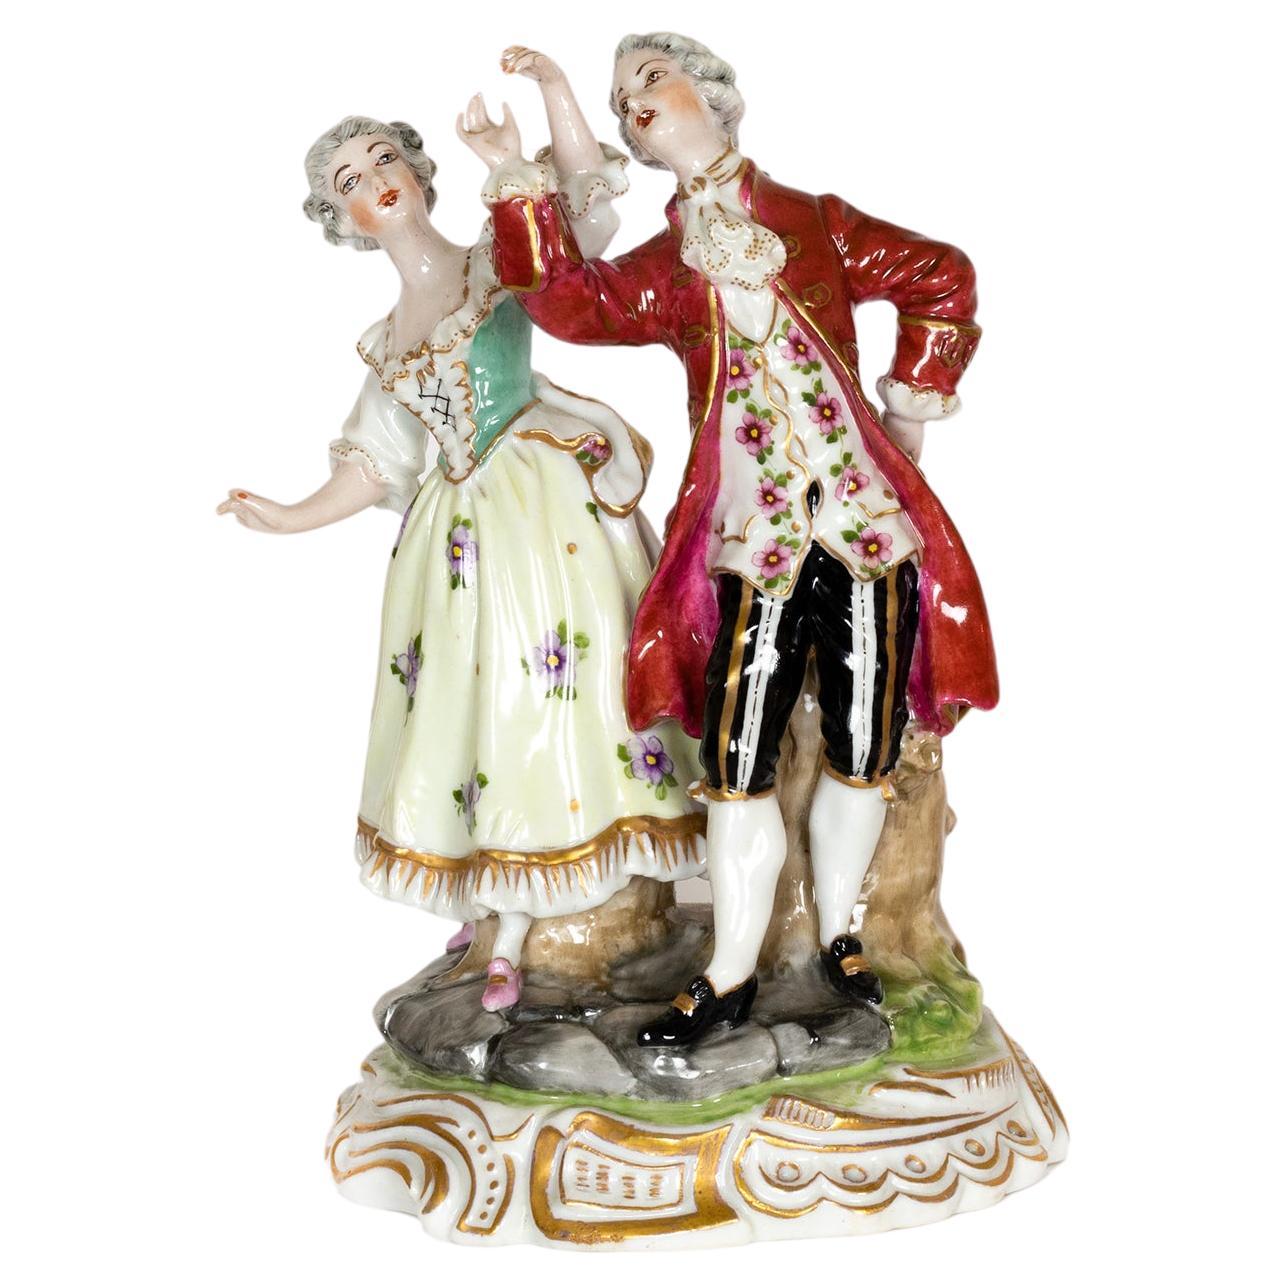 Porzellan-Tanz Paarfigur eines Paares aus dem 18. Jahrhundert von Volkstedt 